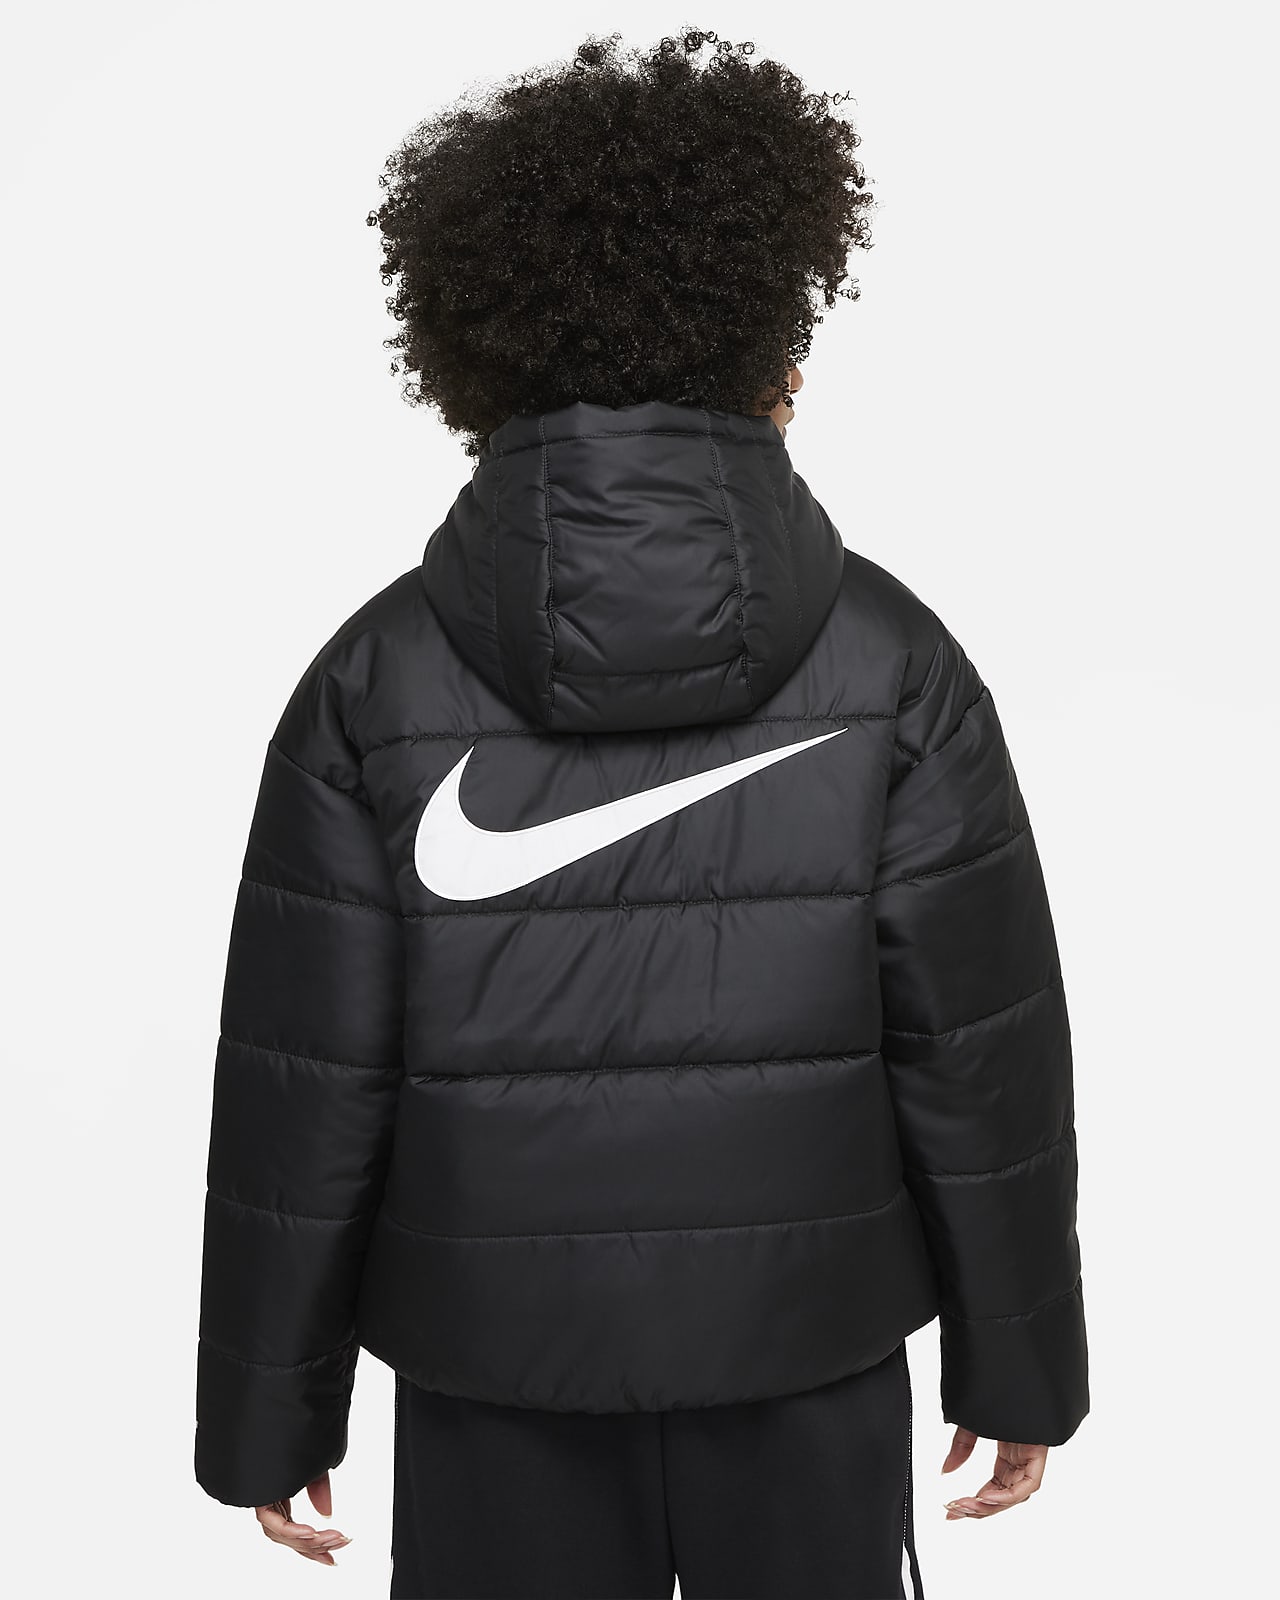 Nike Sportswear Repel Women's Hooded Jacket.